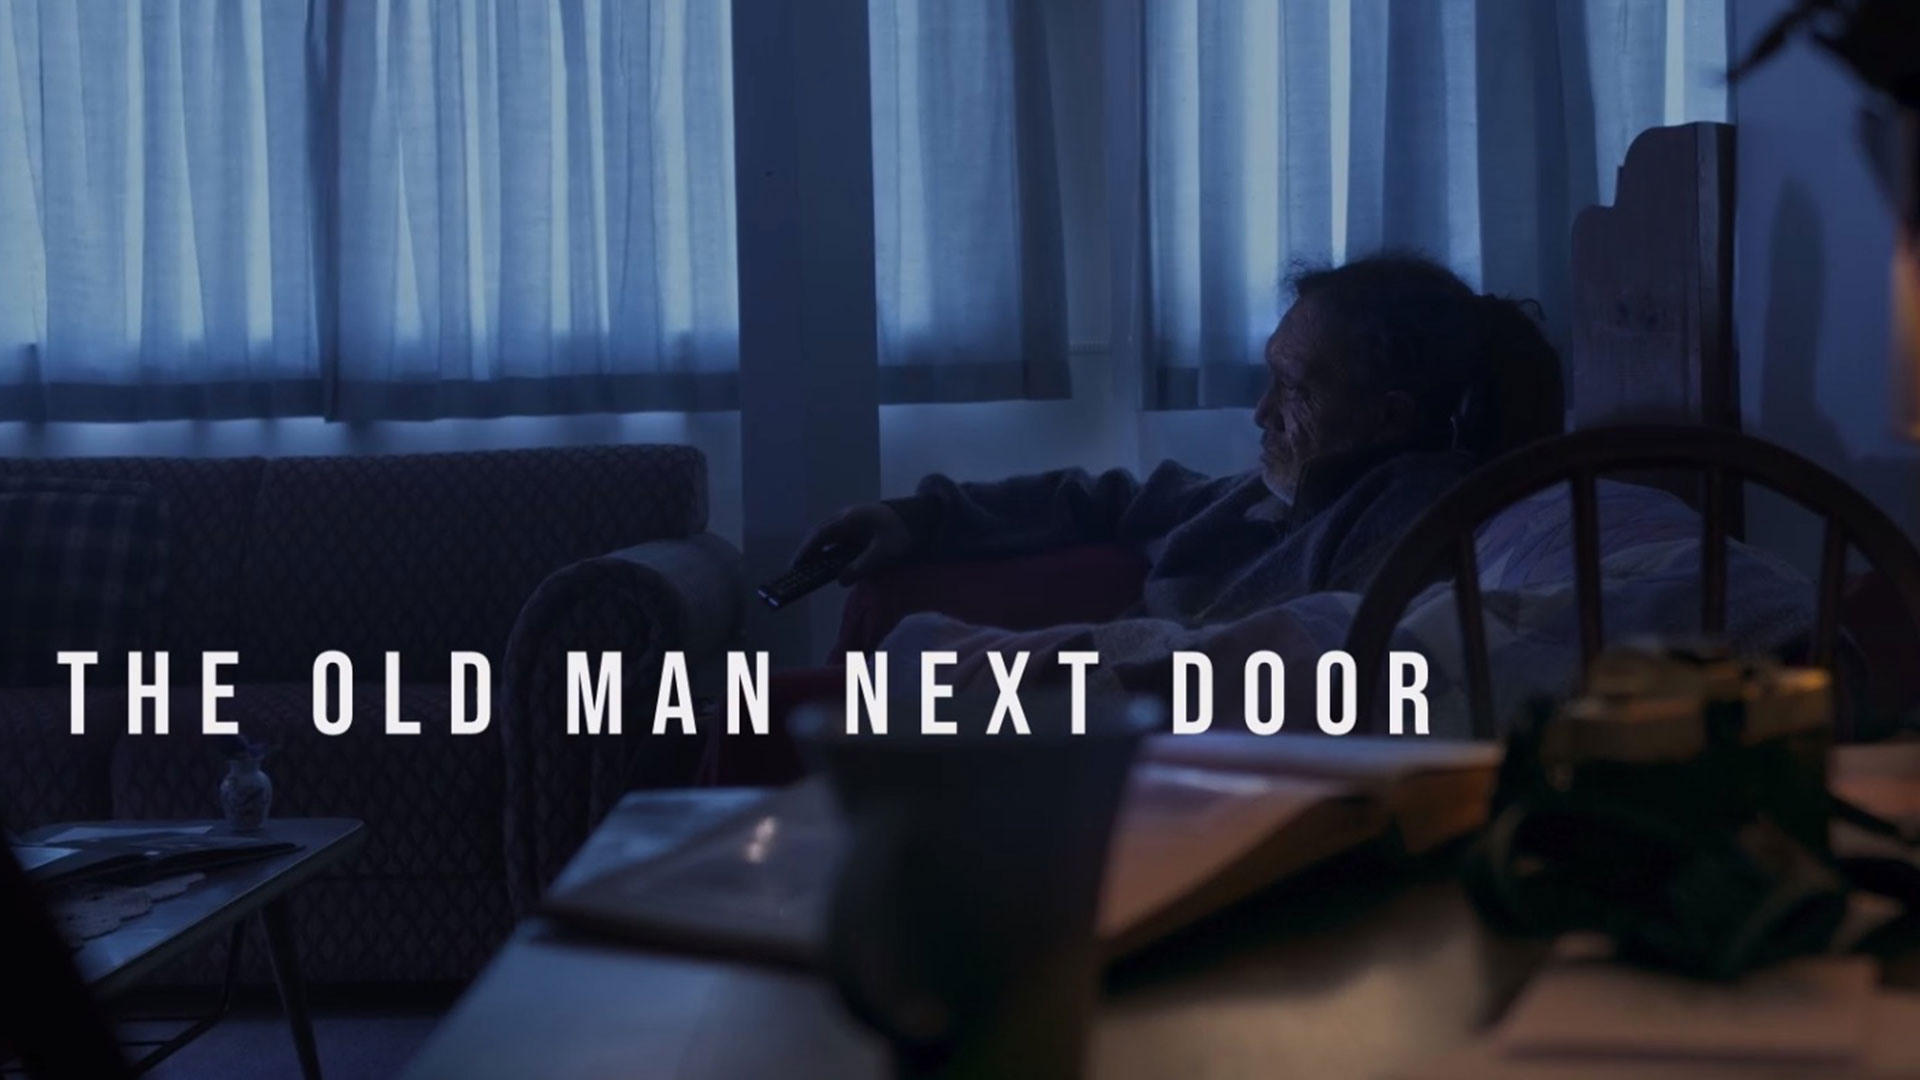 THE OLD MAN NEXT DOOR